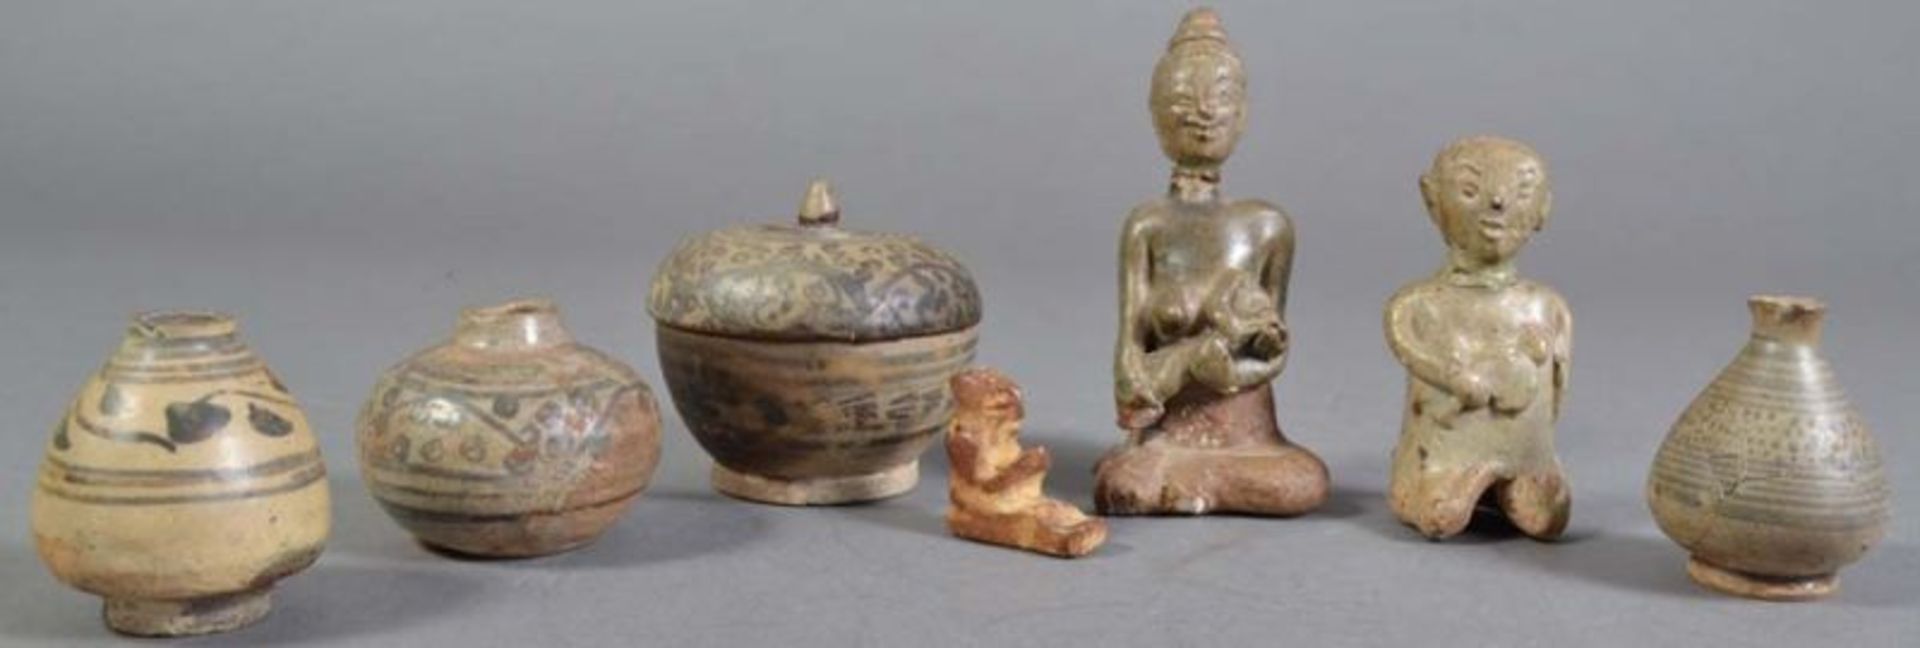 7teiliges Konvolut versch. Keramiken, südostasiatisch. Versch. Alter, Größen & Erhaltung.